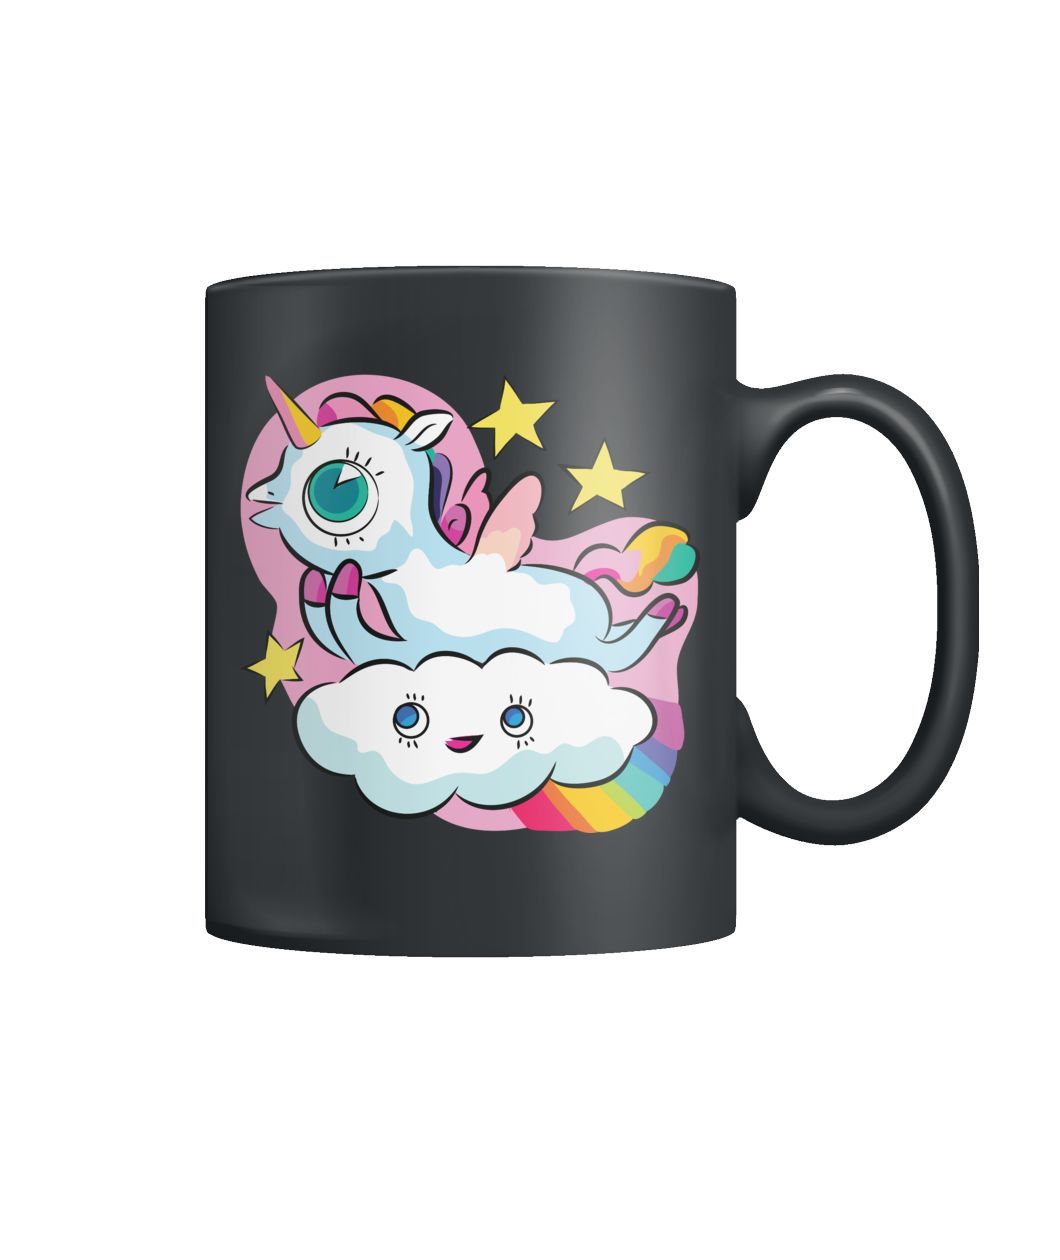 Adorable Unicorn Mug Valentine Gifts Color Coffee Mug